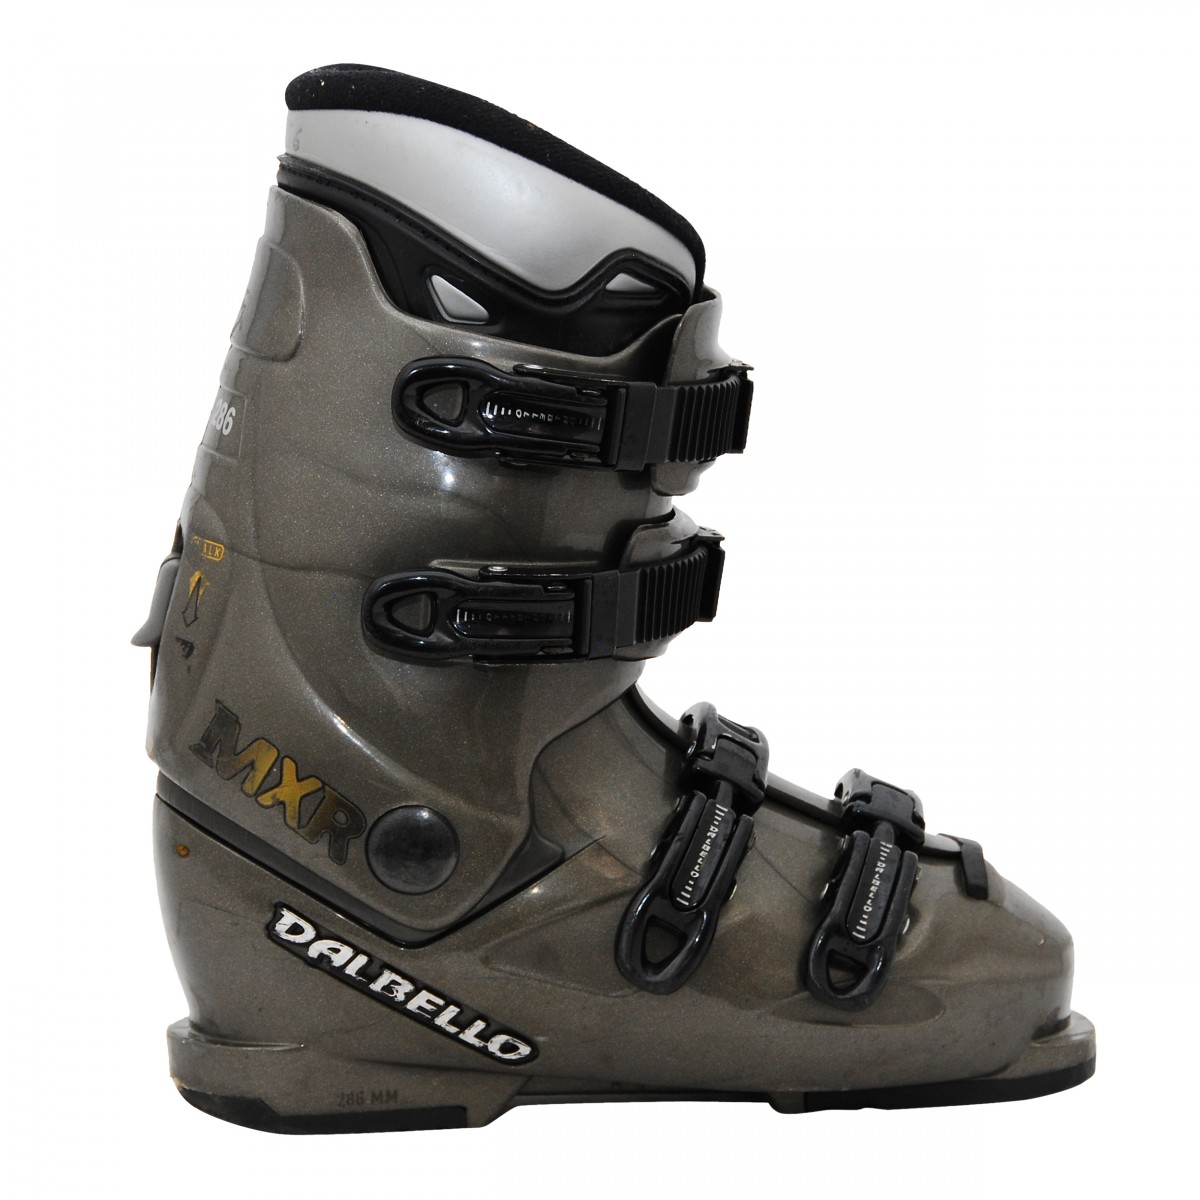 Chaussure de ski occasion modèle Dalbello Max - Qualité B - 42_42.5/27MP